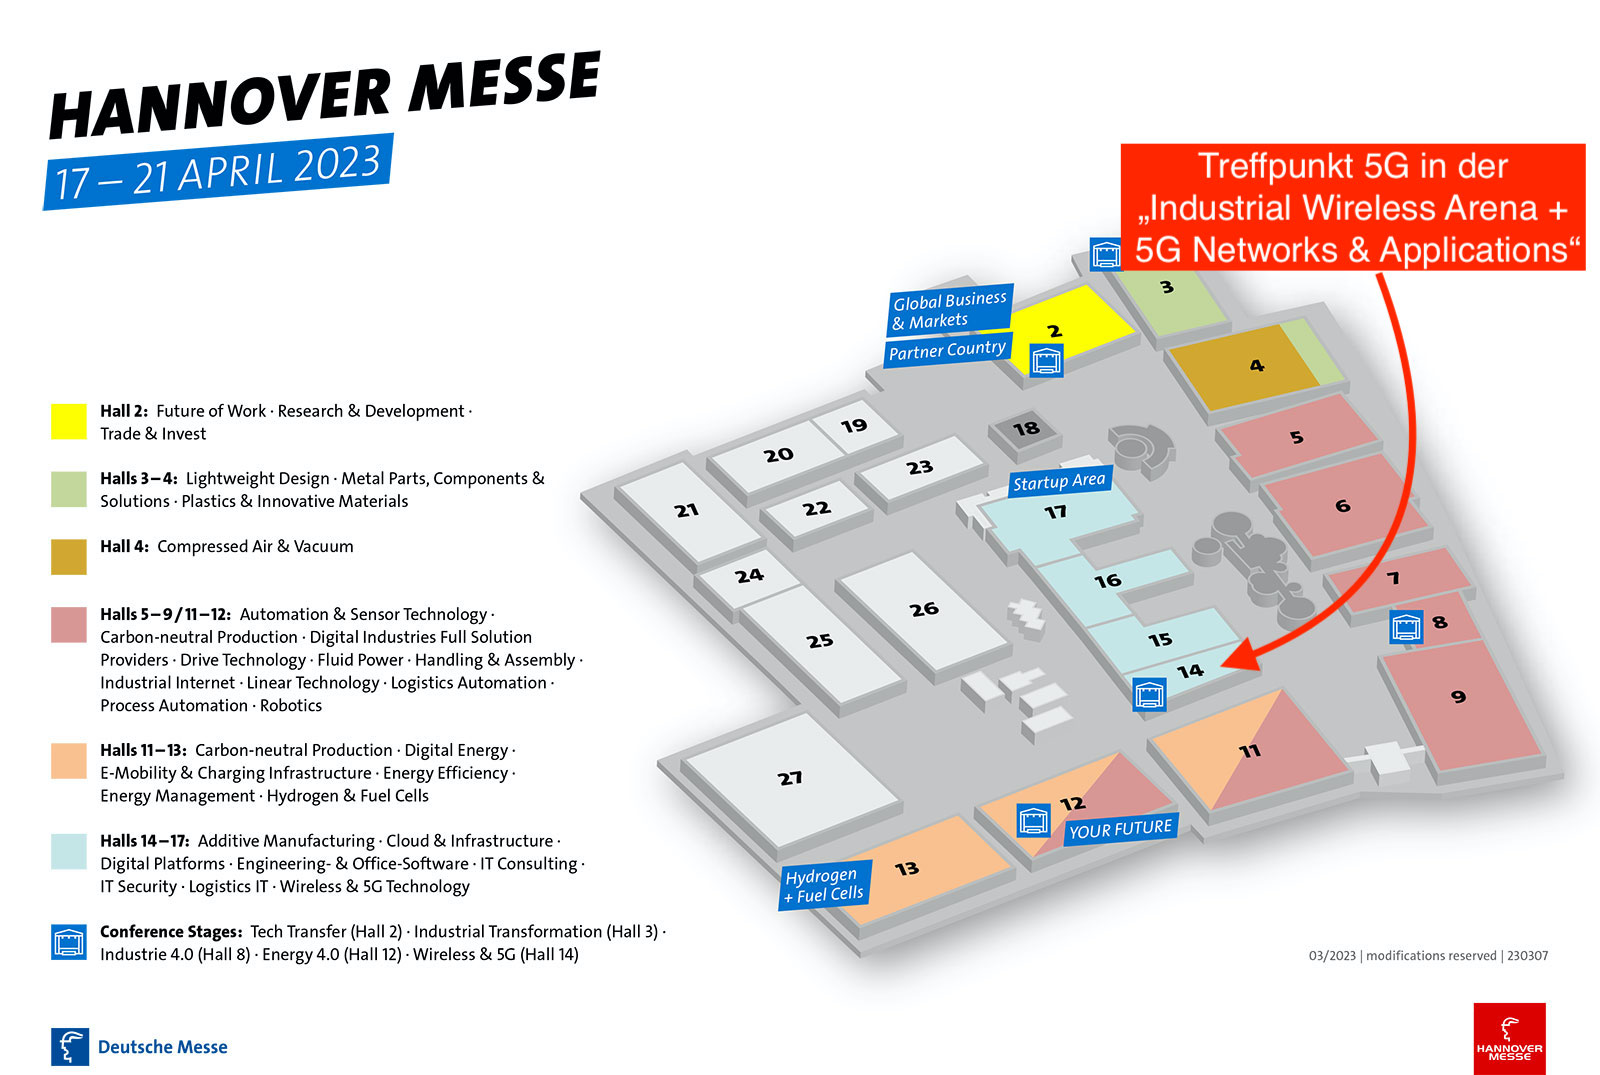 Auf der Hannover Messe 2023 finden Besucher in Halle 14 den zentralen Ort für alle Themen rund umm 5G. (Bild: Hannover Messe, Bearbeitung FUENF-G)